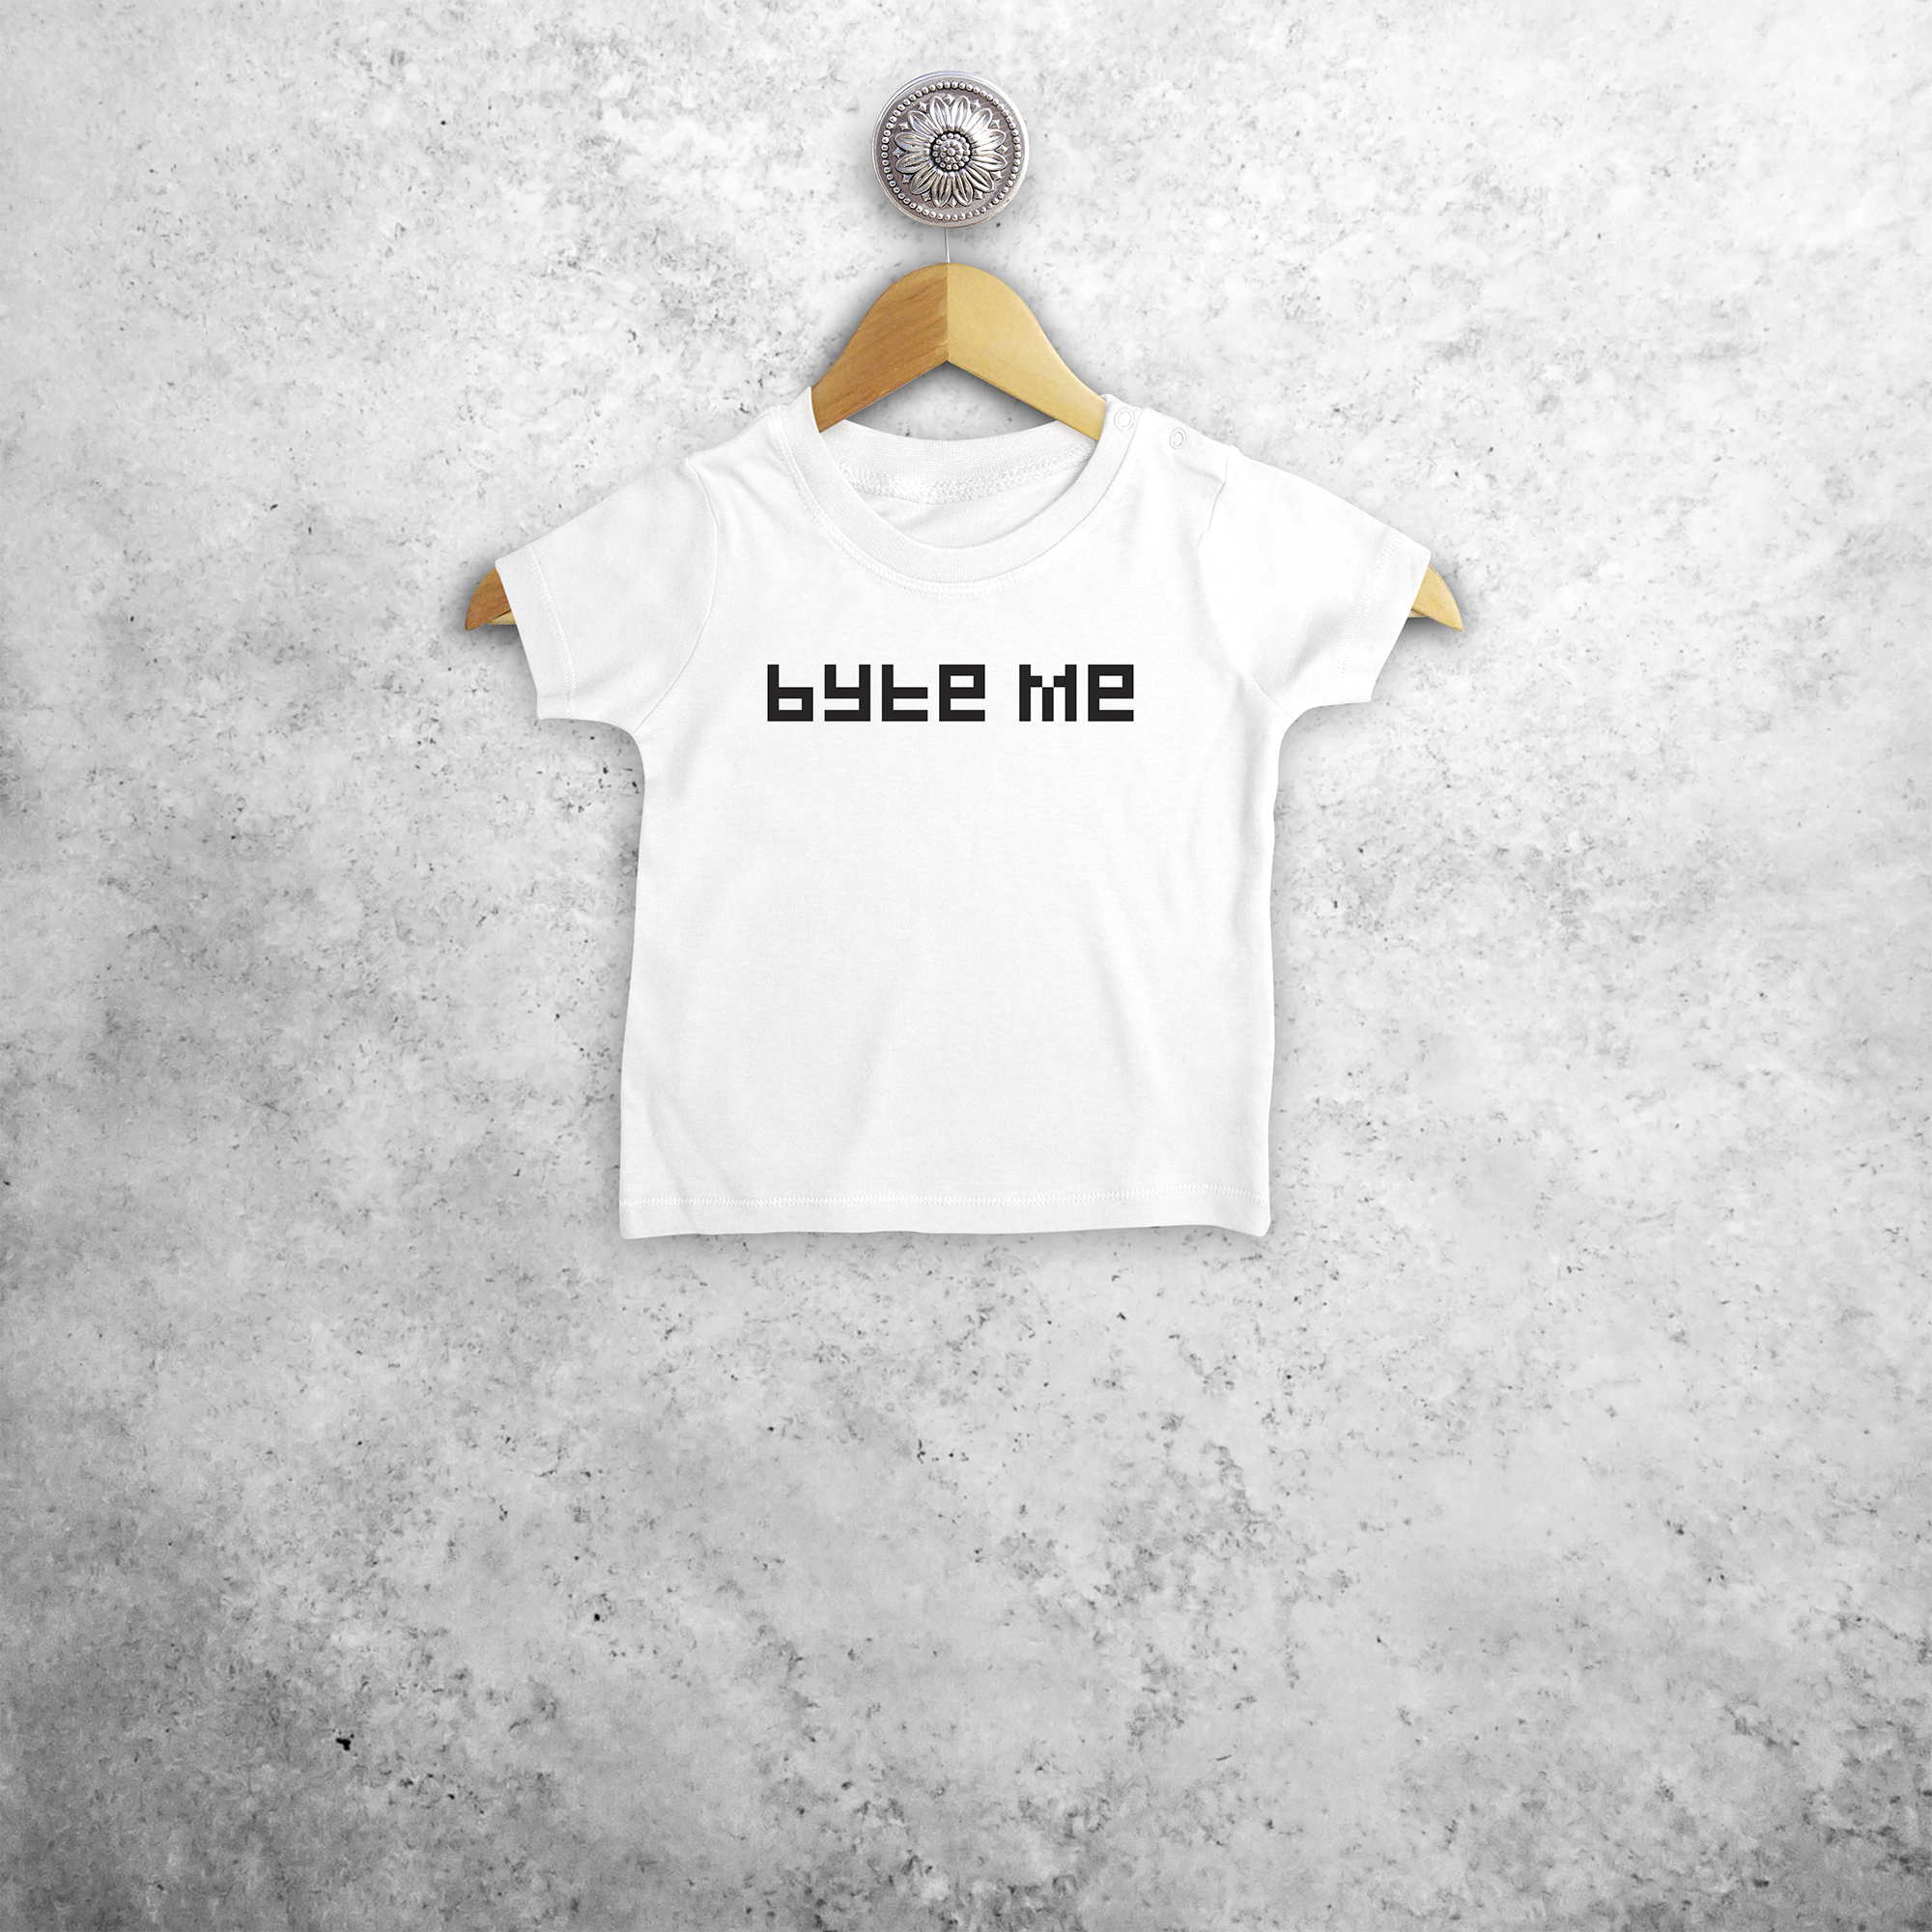 'Byte me' baby shortsleeve shirt